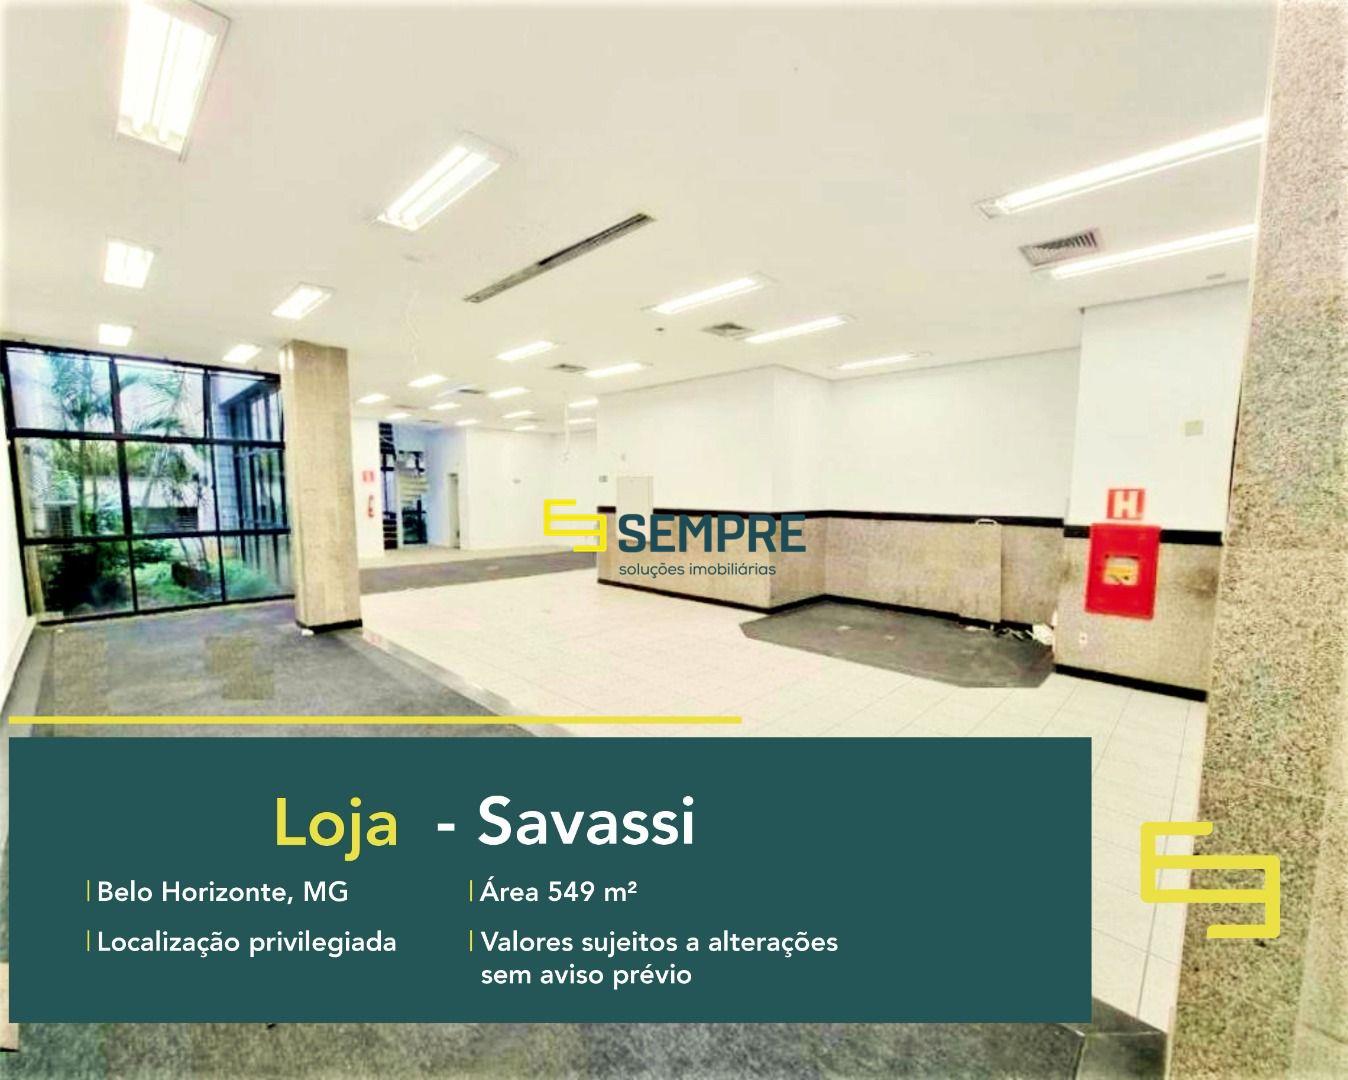 Loja para alugar na Savassi em BH, excelente localização. O Estabelecimento comercial para alugar conta sobretudo, com área de 665 m².